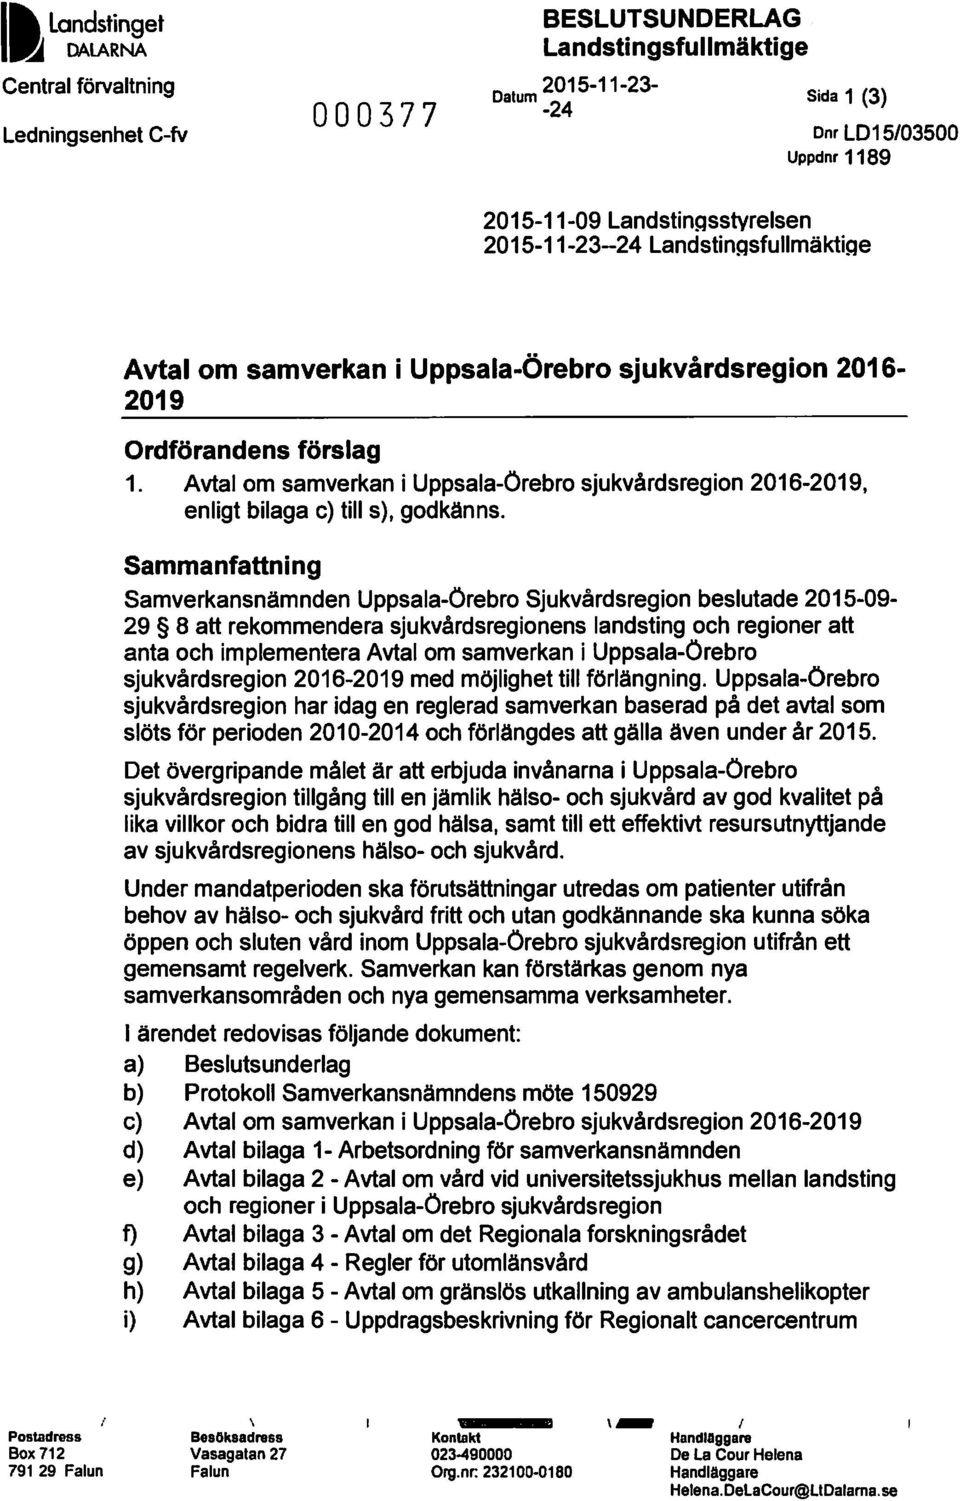 Avtal om samverkan i Uppsala-Örebro sjukvårdsregion 2016-2019, enligt bilaga c) till s), godkänns.